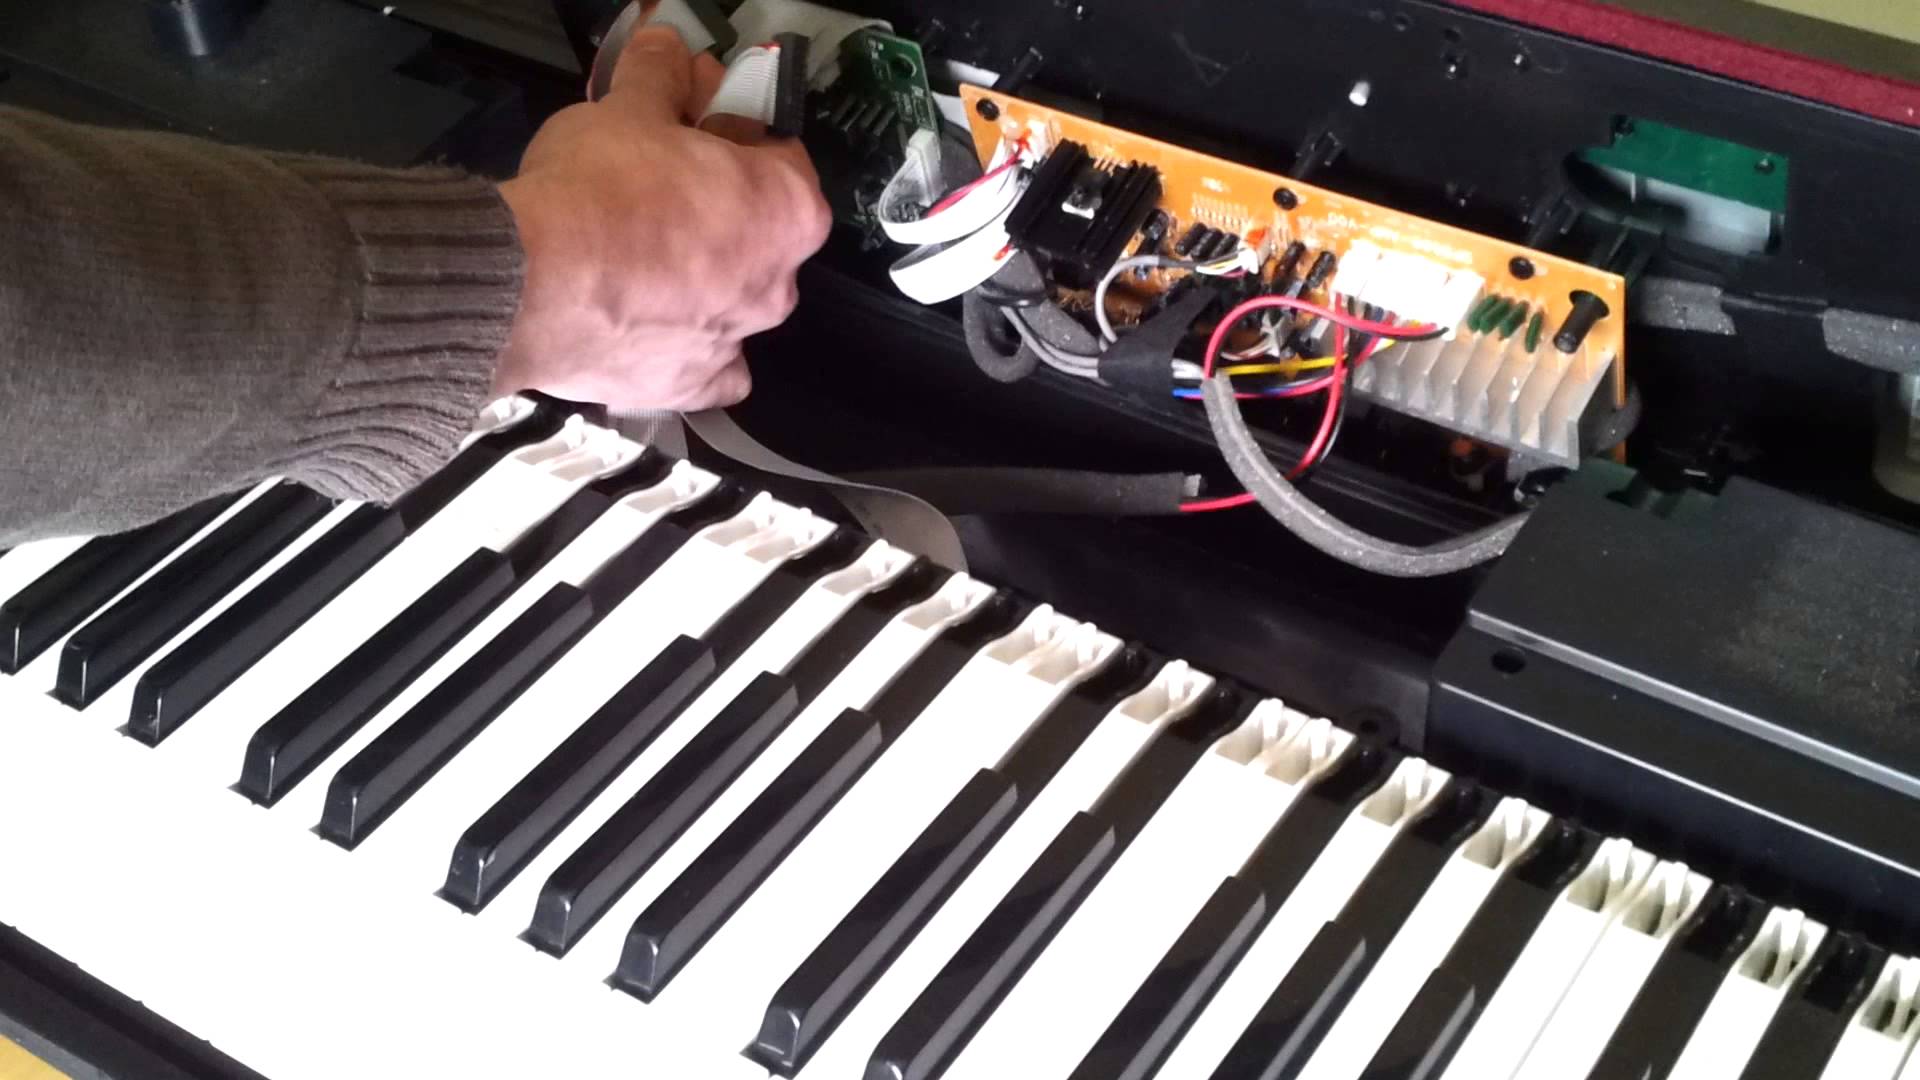 reparacion piano digital electronico